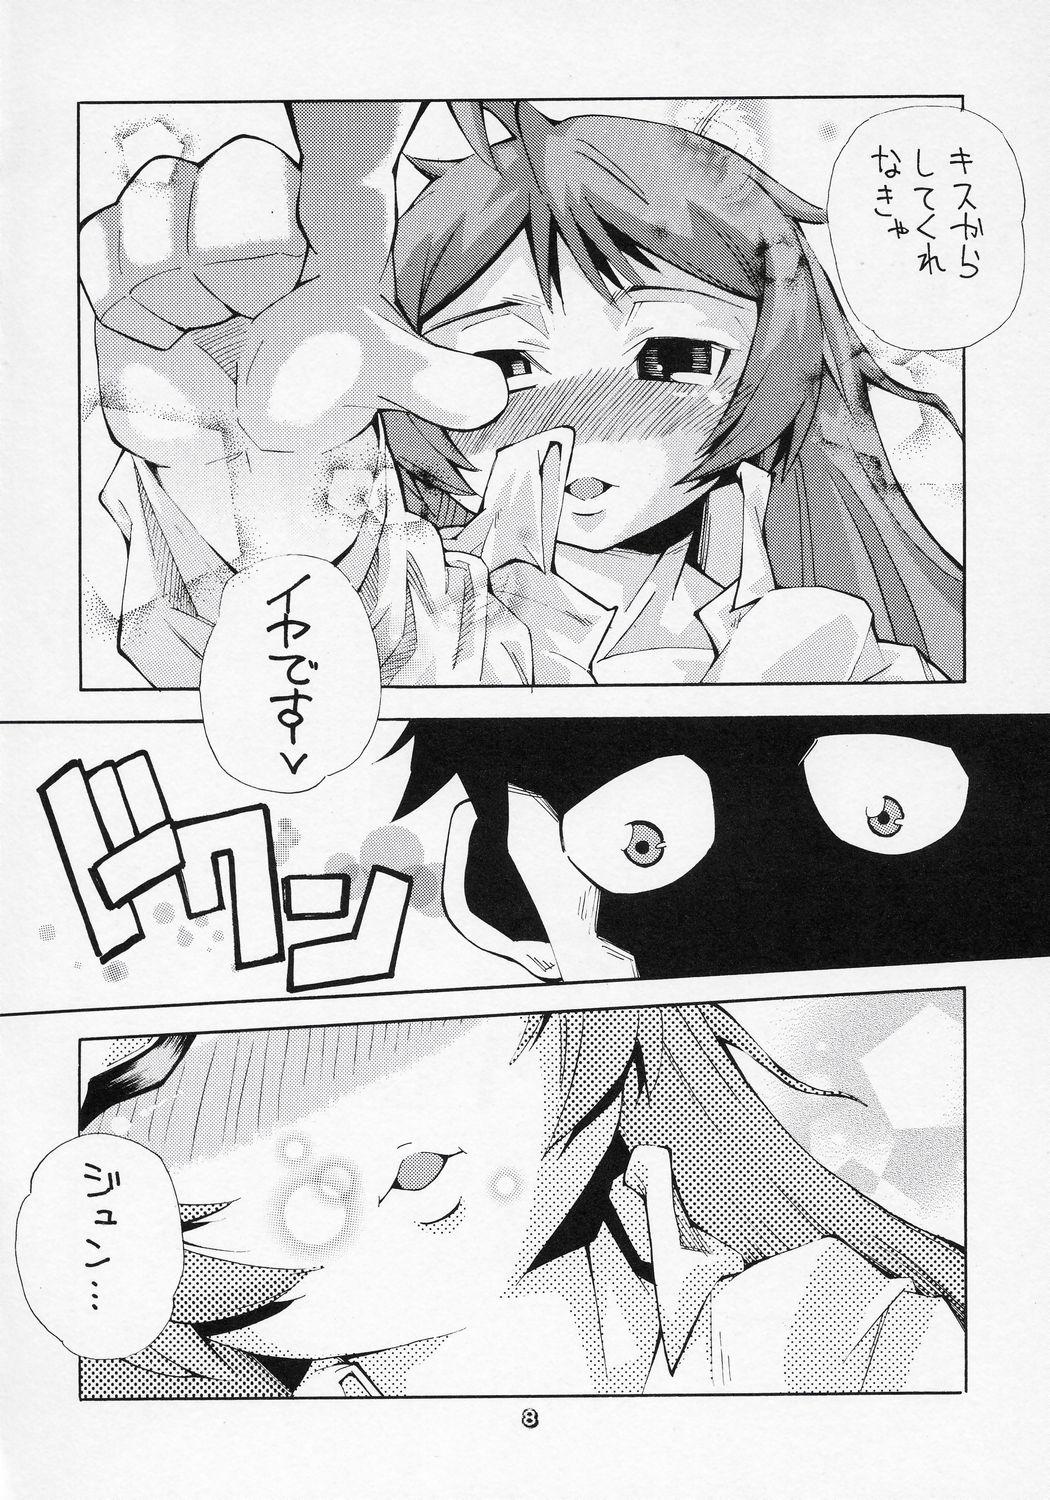 Fake Tits Aru Asa, Me ga Sametara Ningen ni Natta Suiseiseki ga Tonari ni Ita to Iu Mousou o Manga ni Shita Hon. - Rozen maiden Bus - Page 7